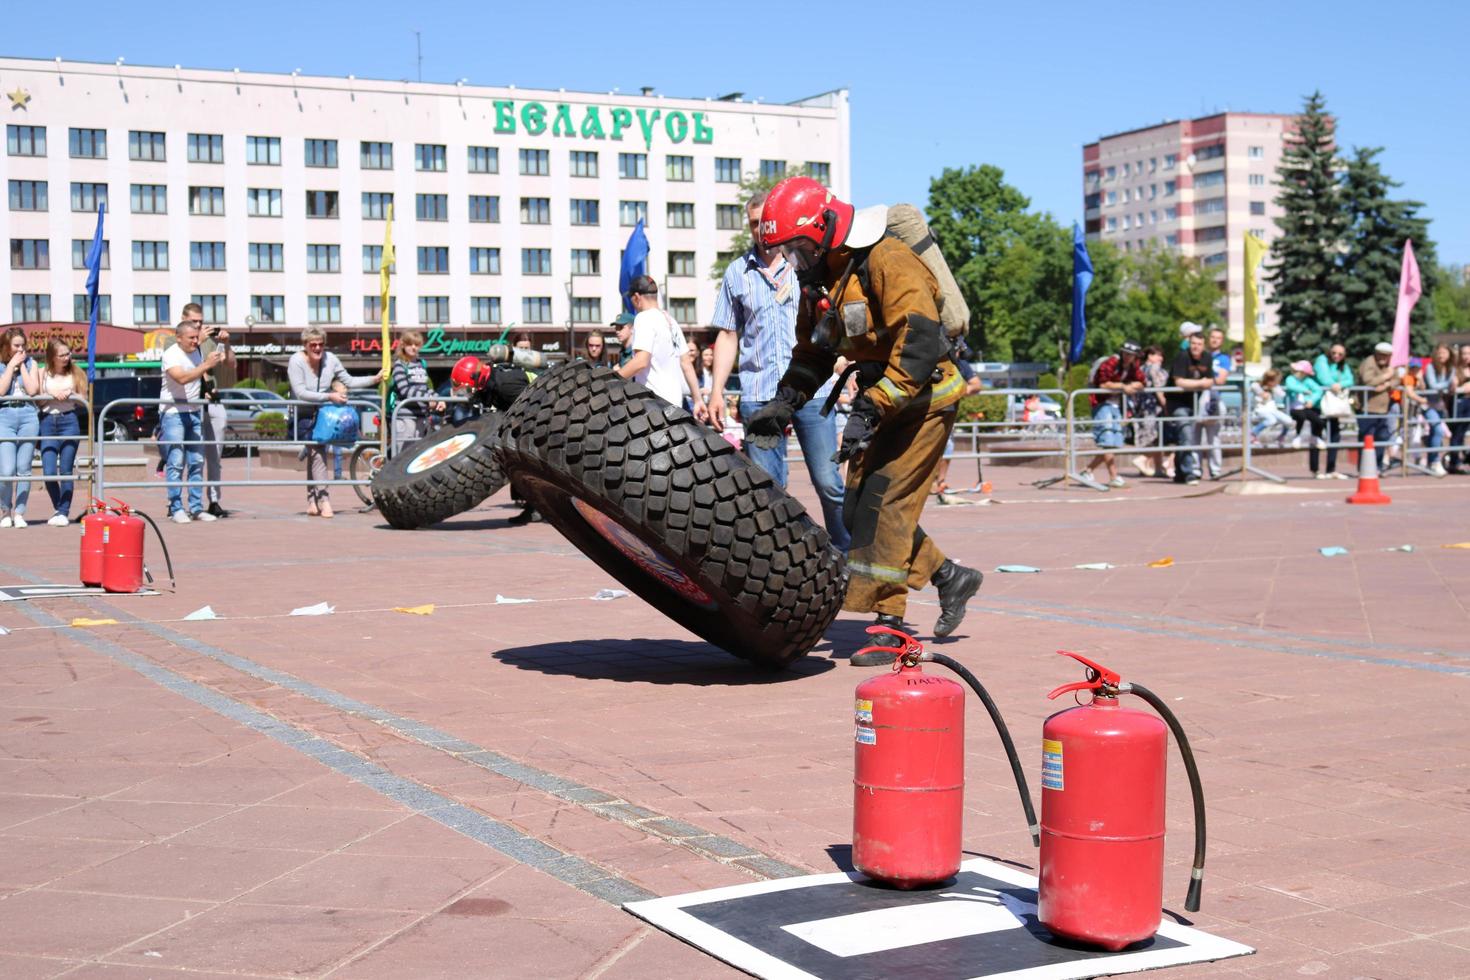 en brandman i en eldfast kostym och en hjälm kör och vänder en stor sudd hjul i en brand stridande konkurrens, belarus, minsk, 08.08.2018 foto